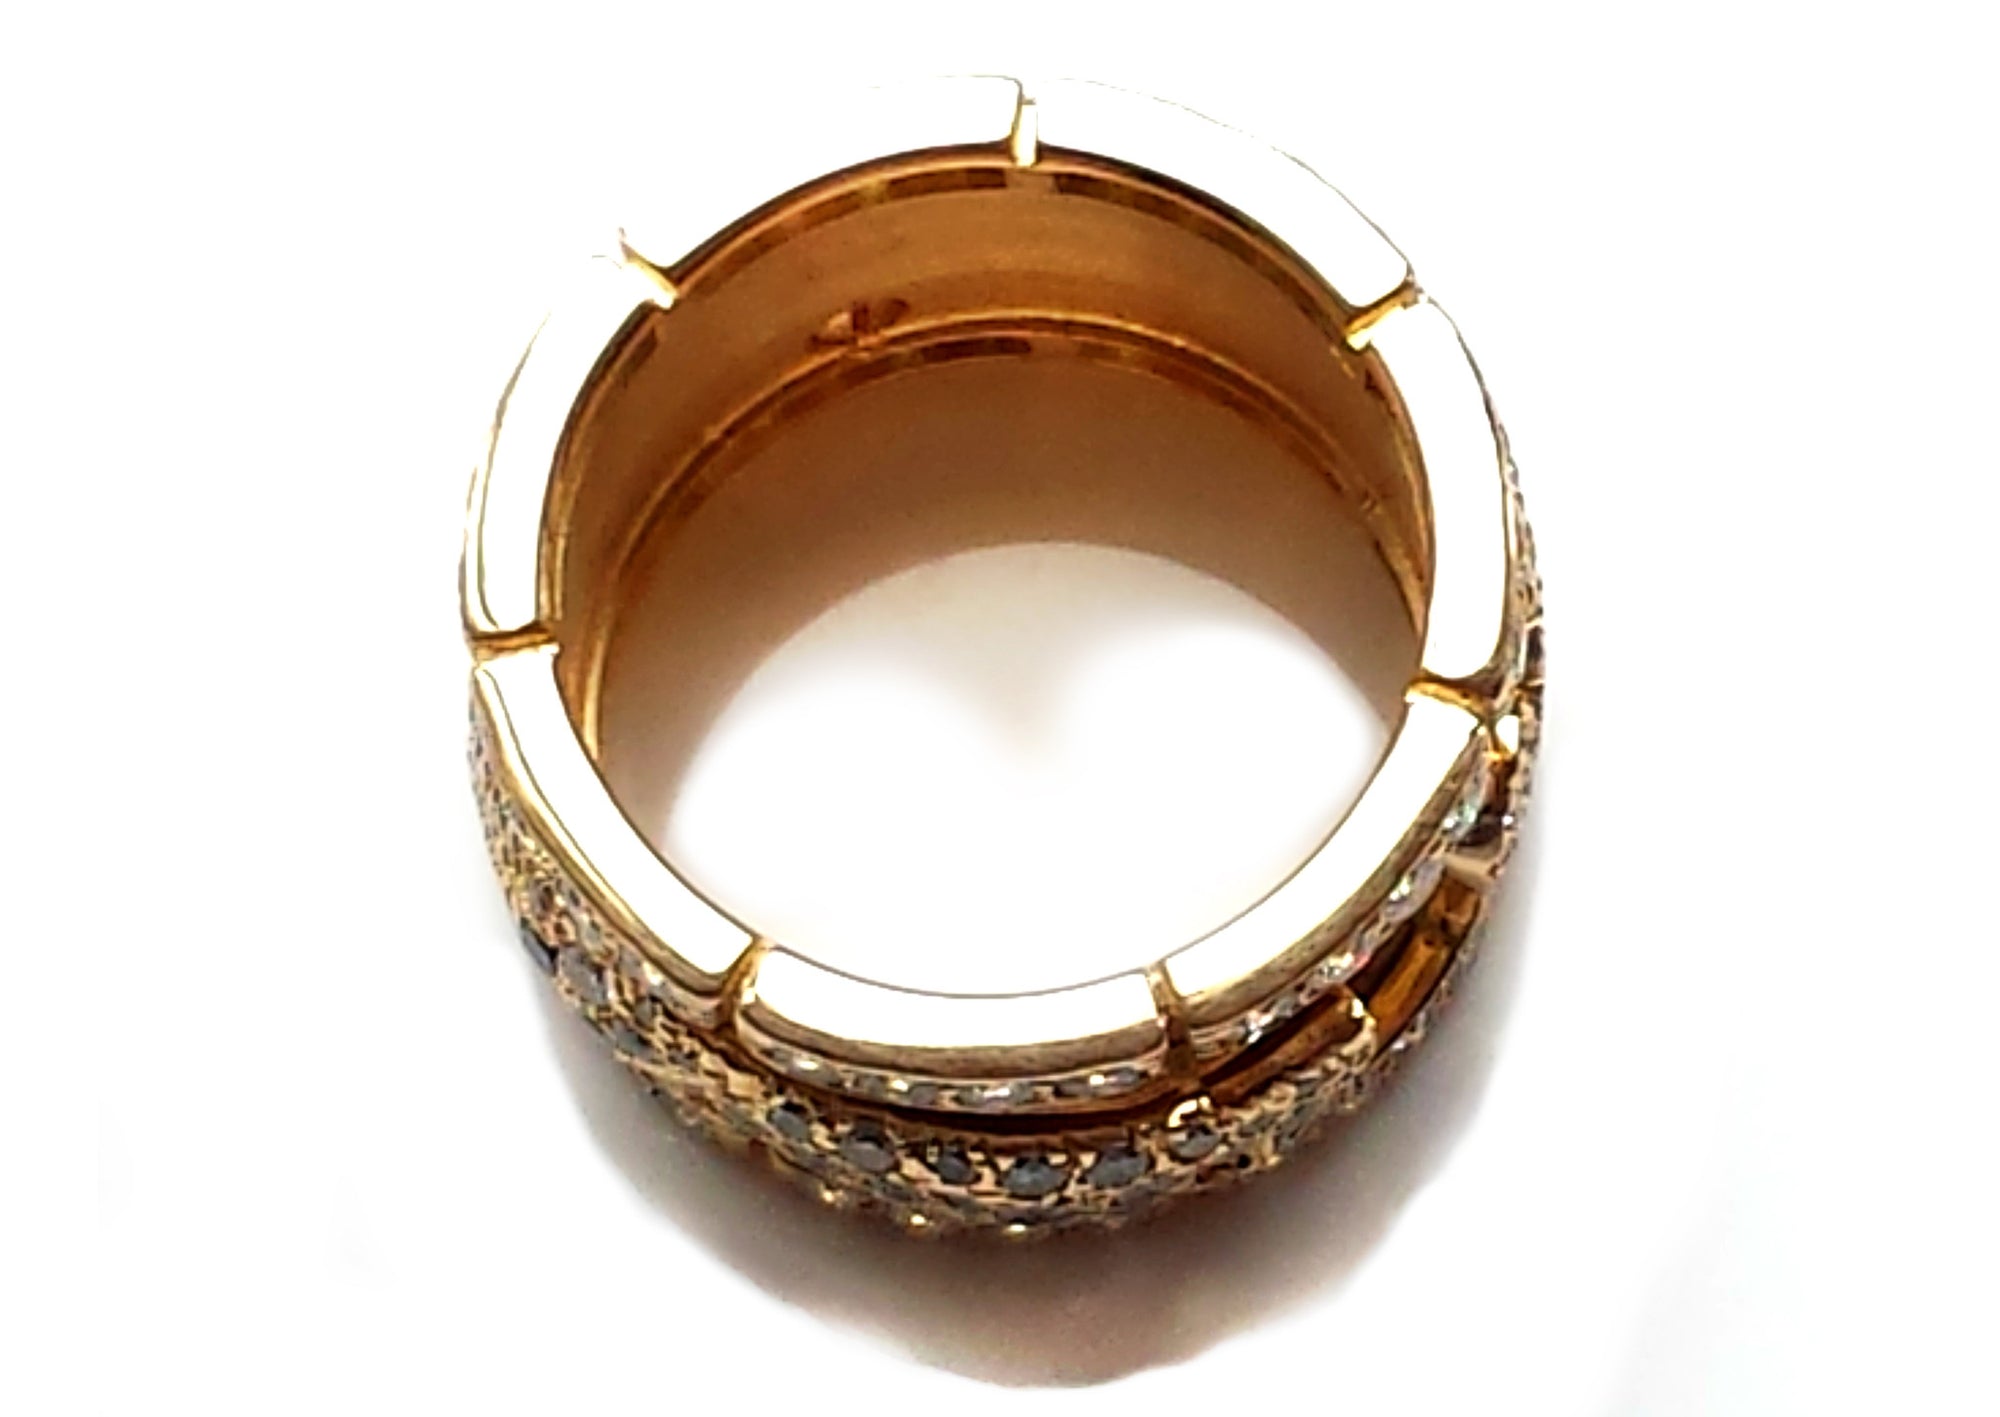 Cartier Diamond & 18K Yellow Gold Walking Panthere Ring, Size 55